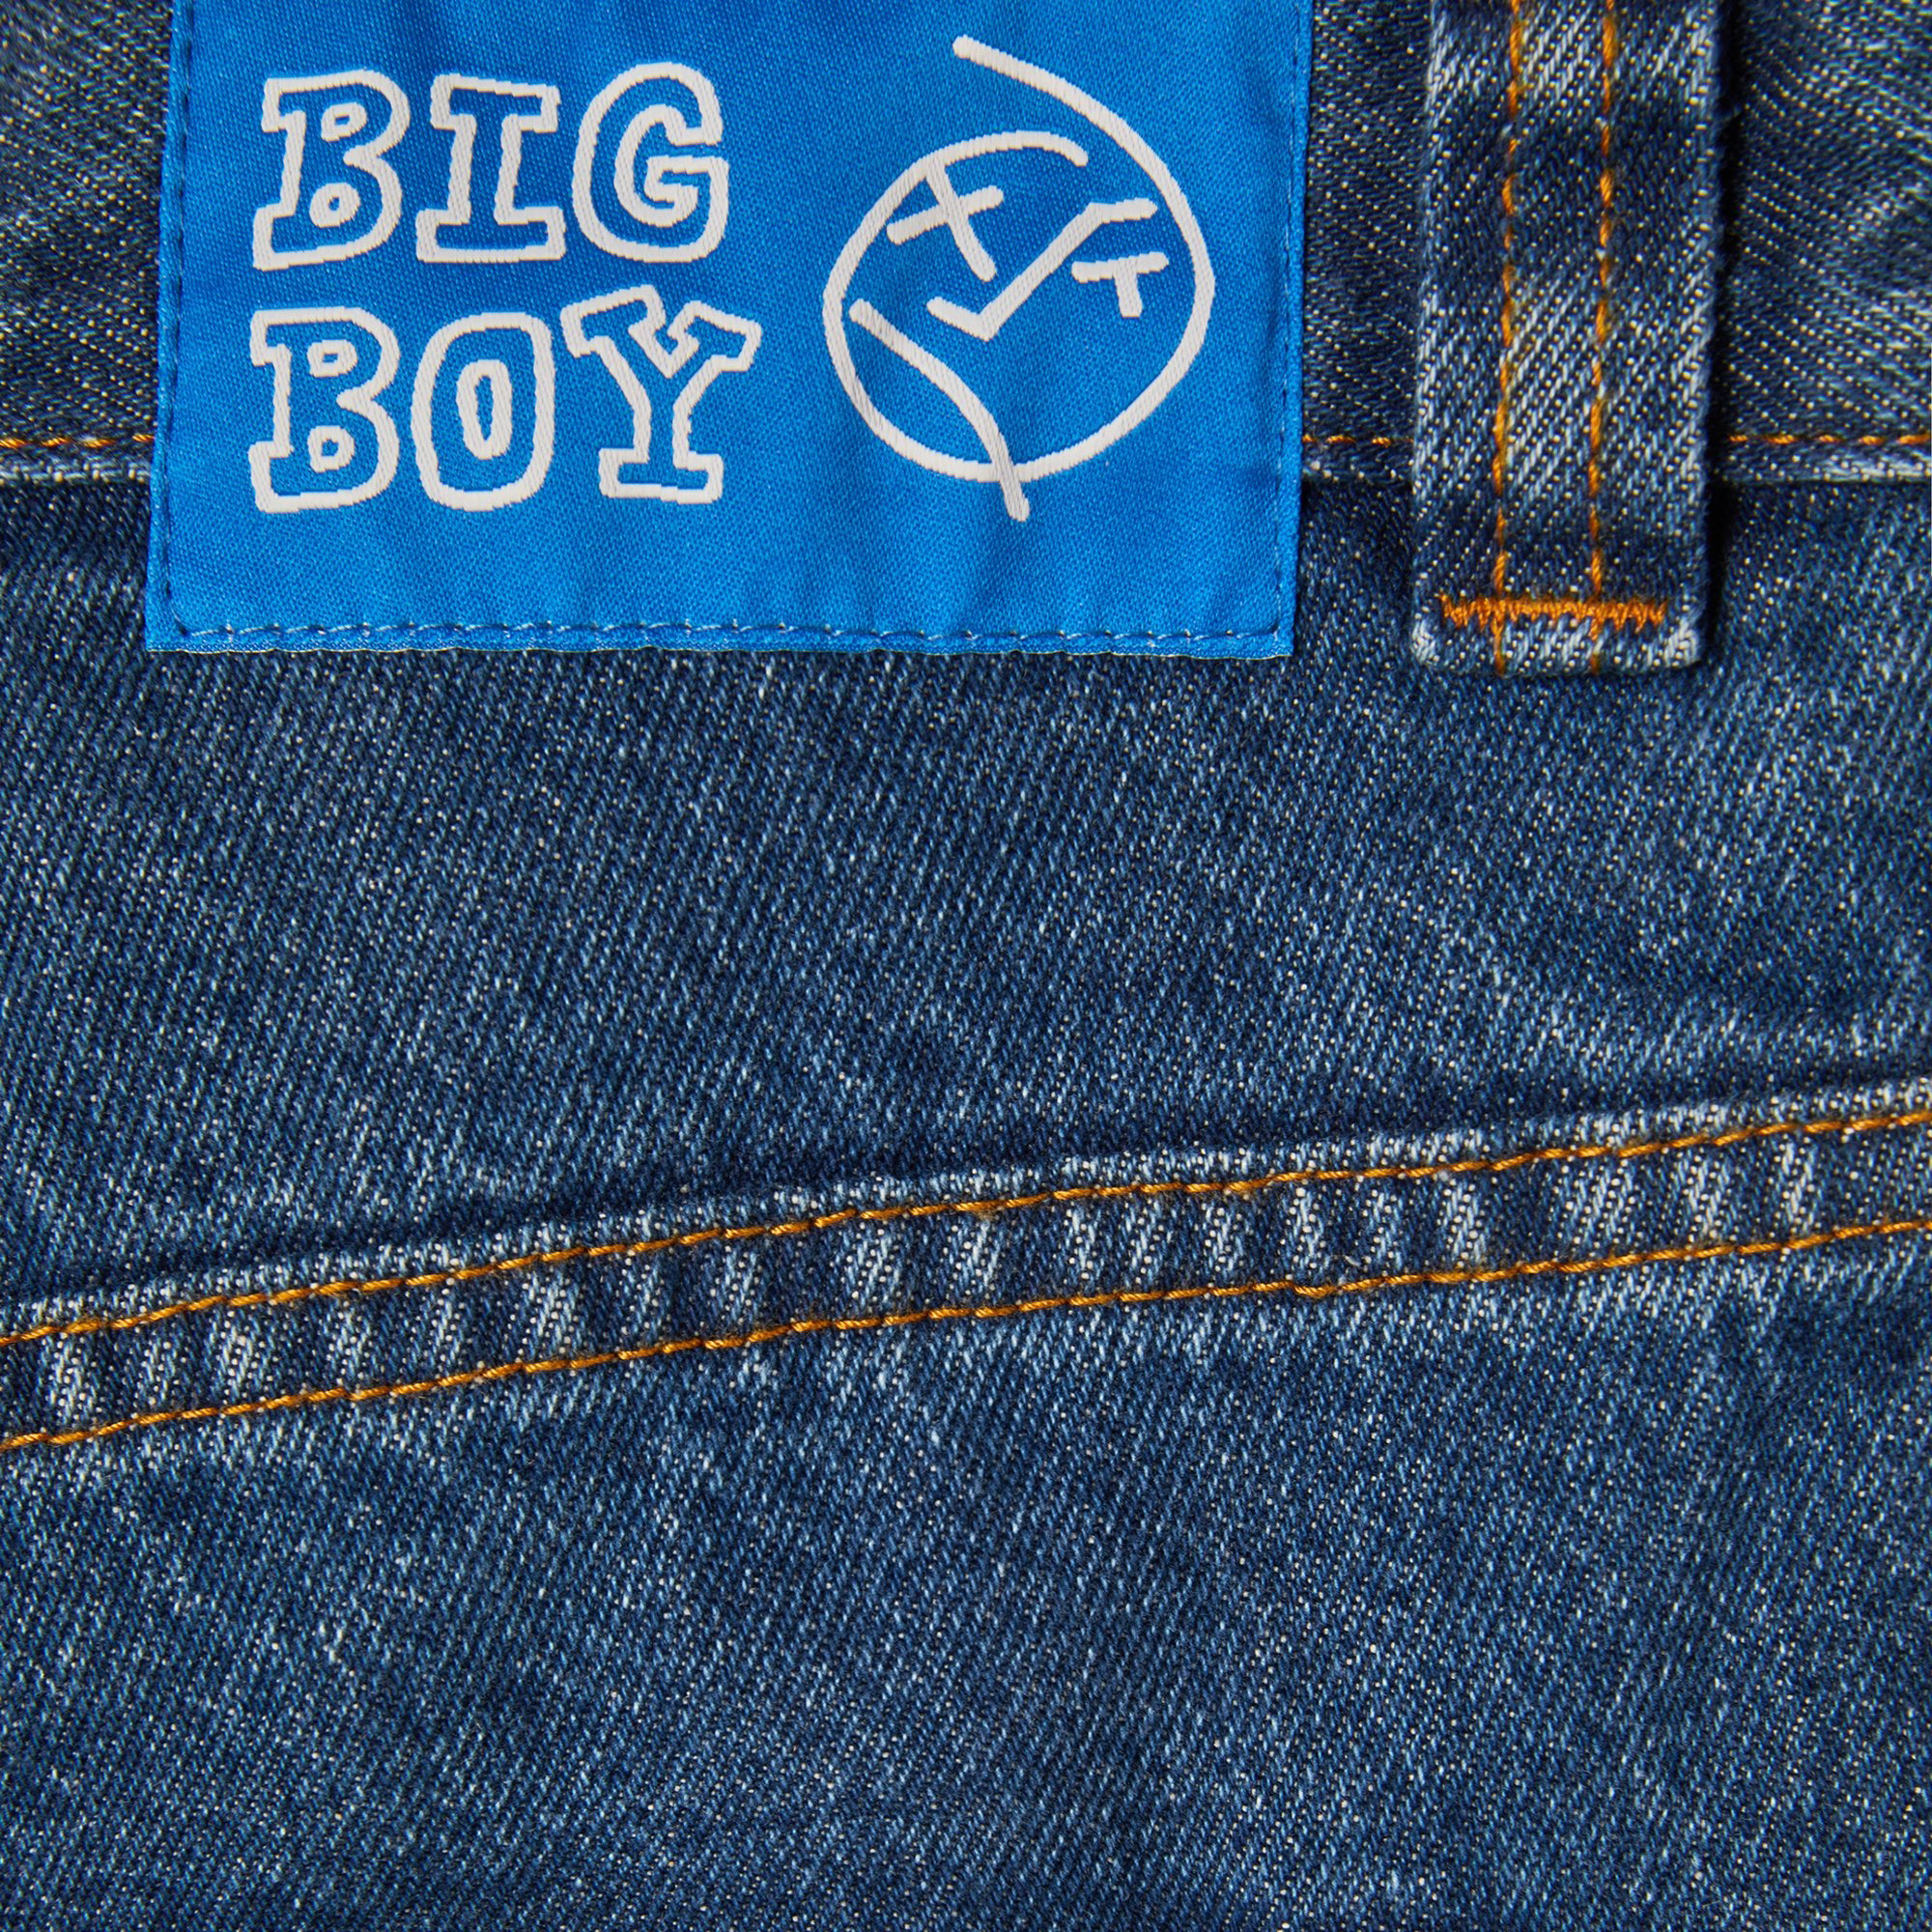 POLAR - Big Boy Jeans "Dark Blue"